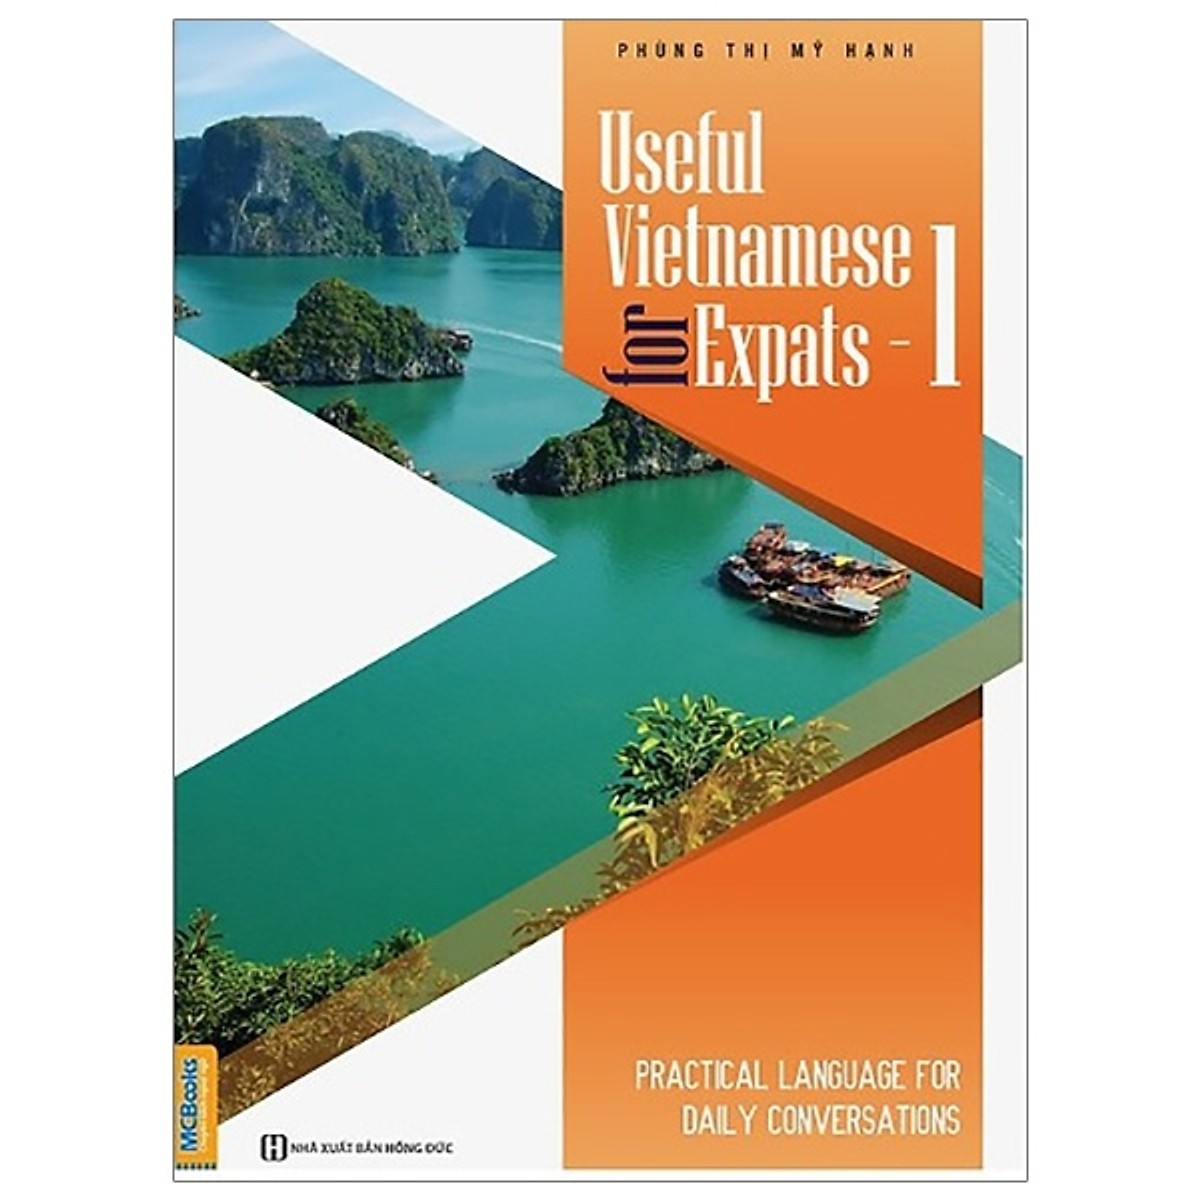 Useful Vietnamese For Expats - 1 (Quét QR Code tại App MCBooks Để Nhận Bộ Quà Tặng) (Tặng Decan Đo Chiều Cao Cho Trẻ 1-5 Tuổi)